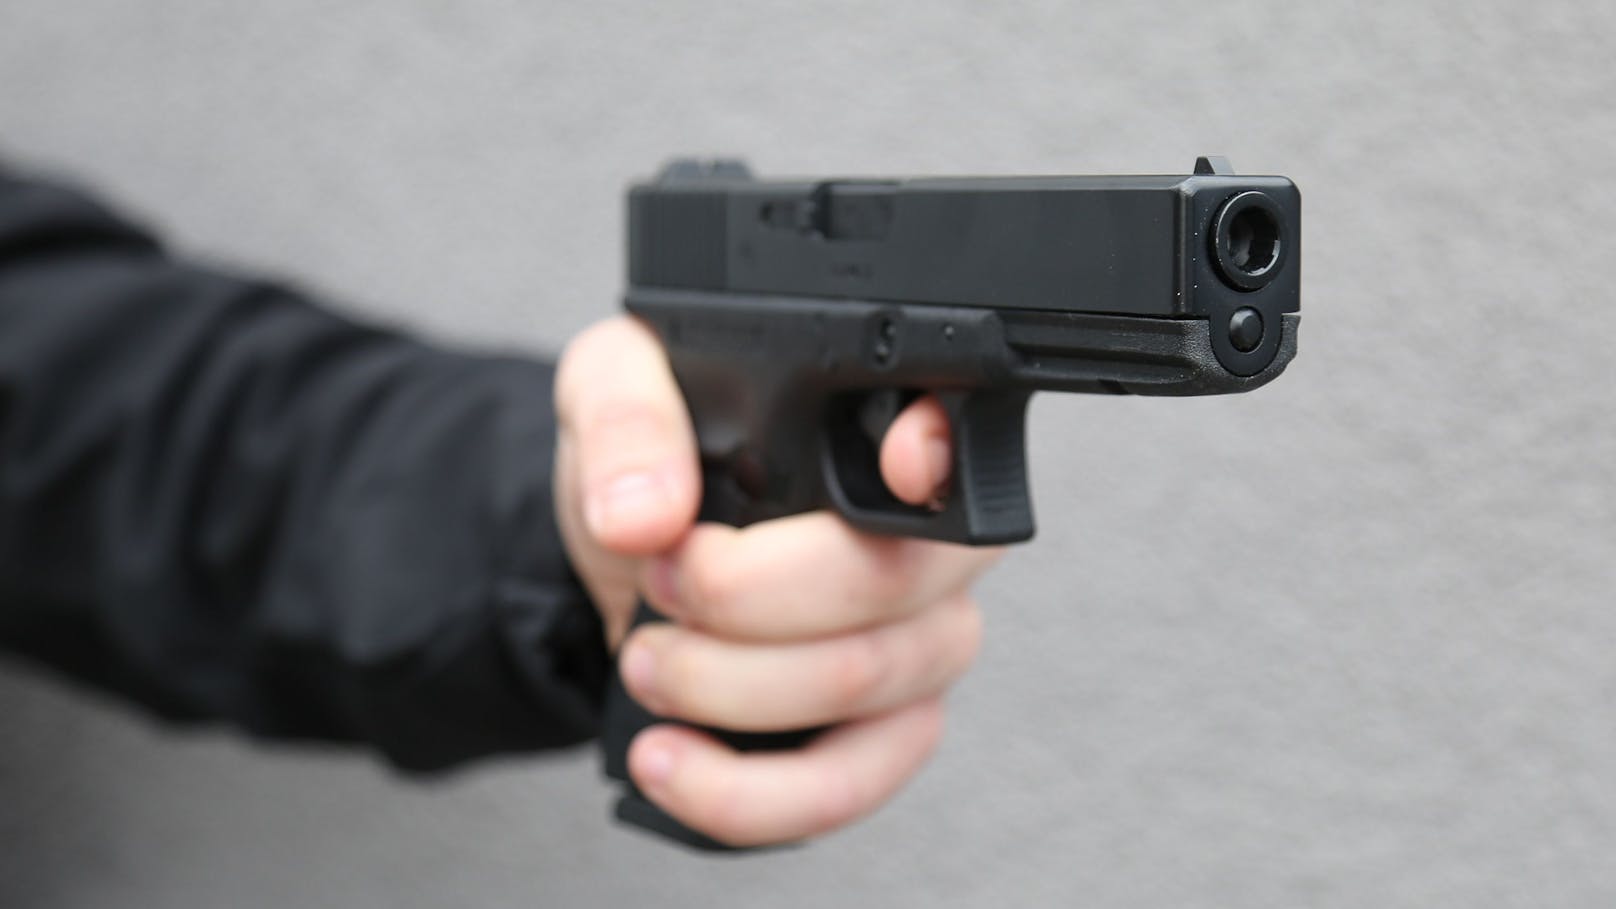 Lokalverkauf geht schief – Besitzer mit Waffe bedroht